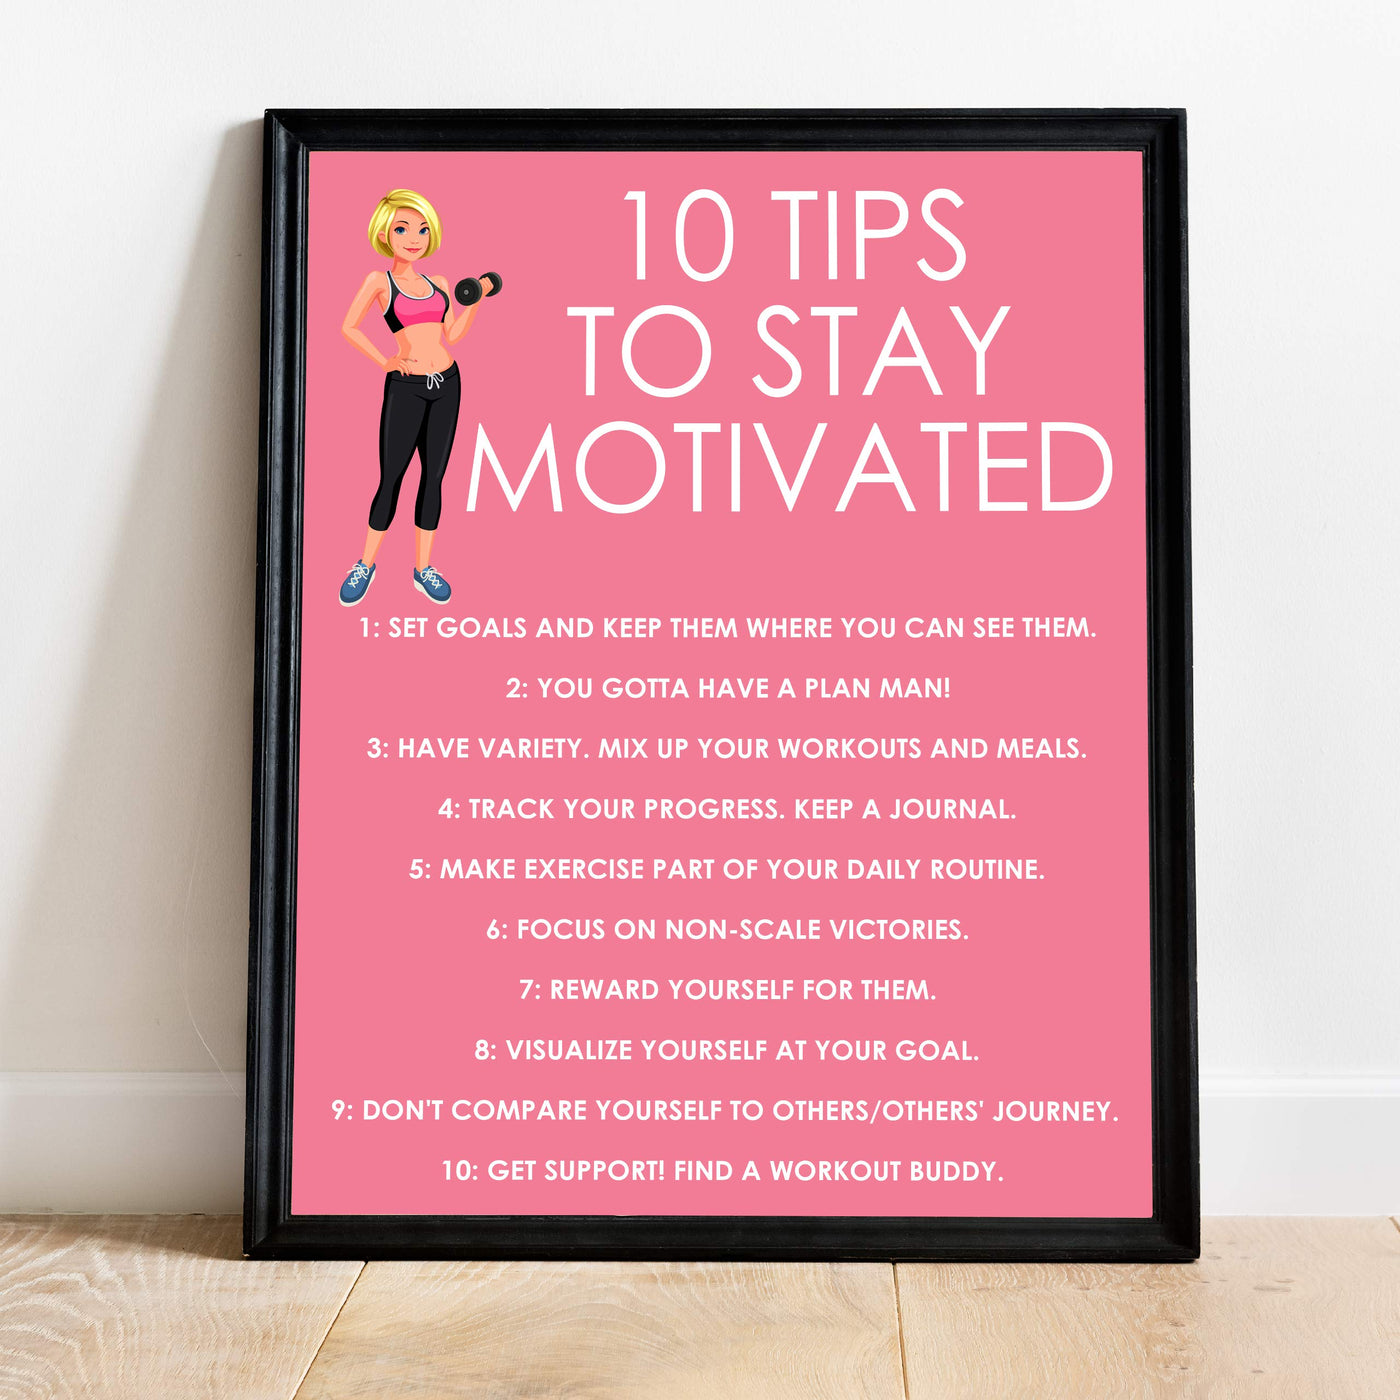 11 Exercise Motivation Tips for Seniors